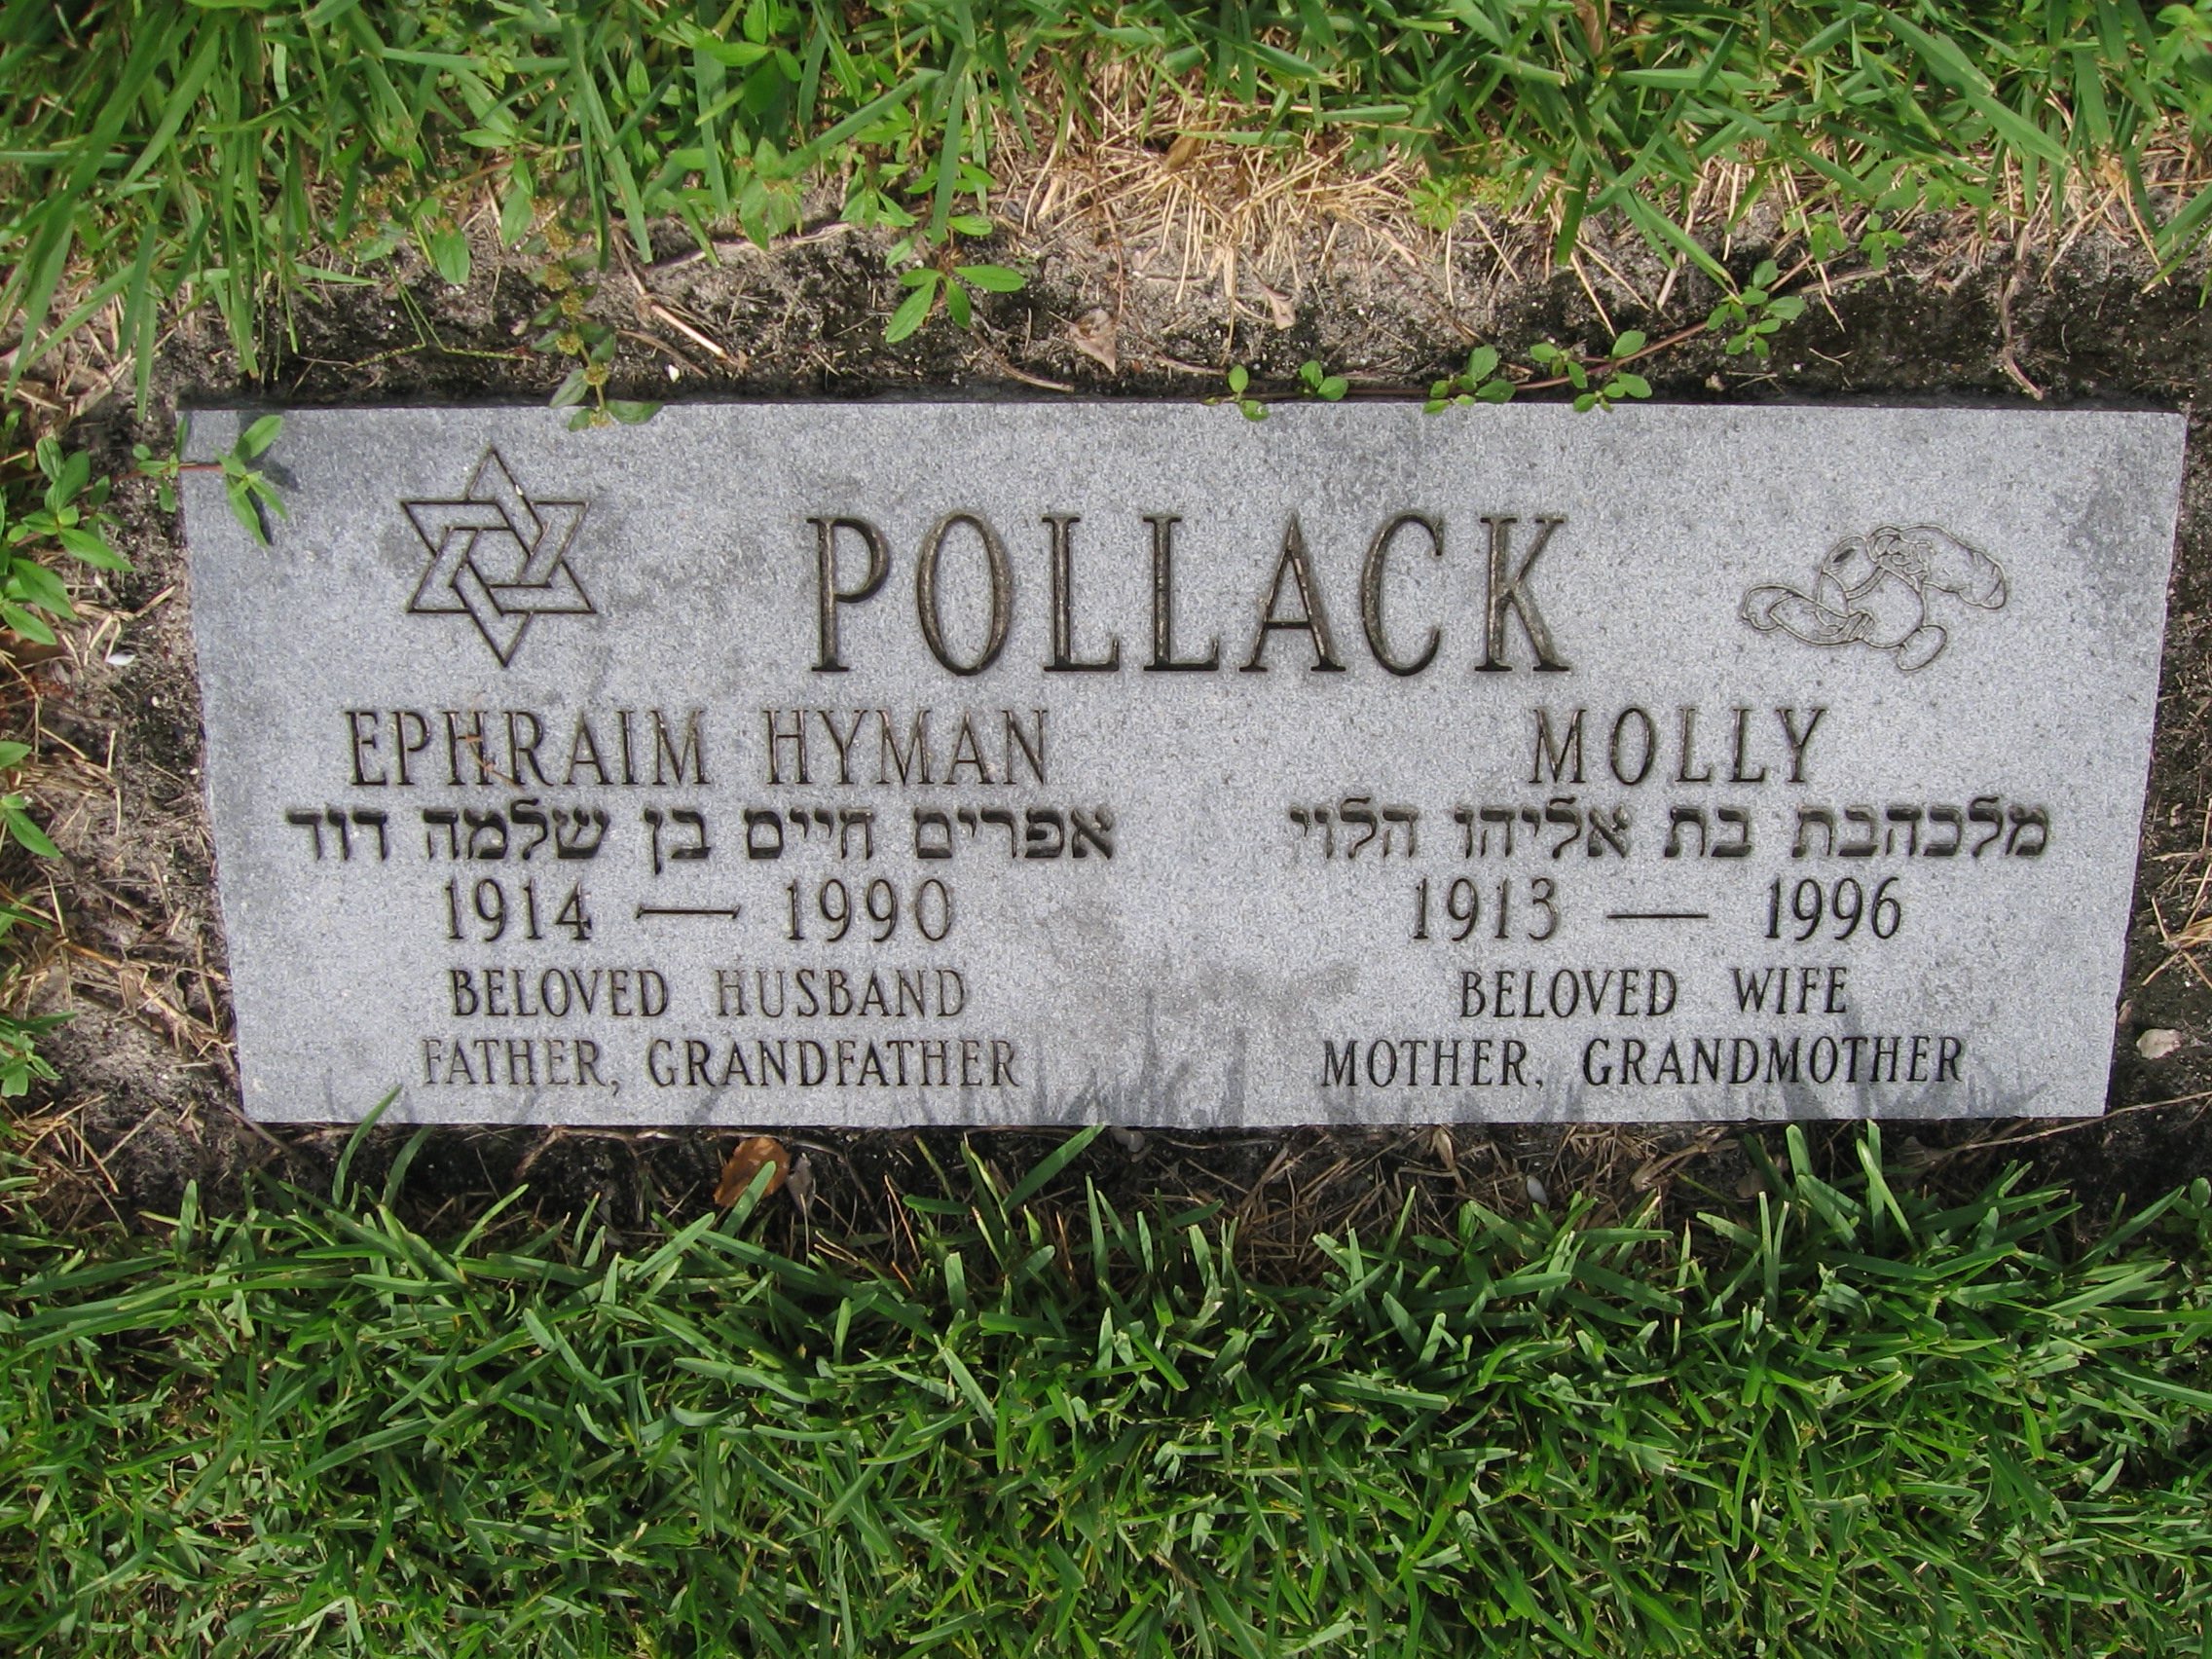 Molly Pollack